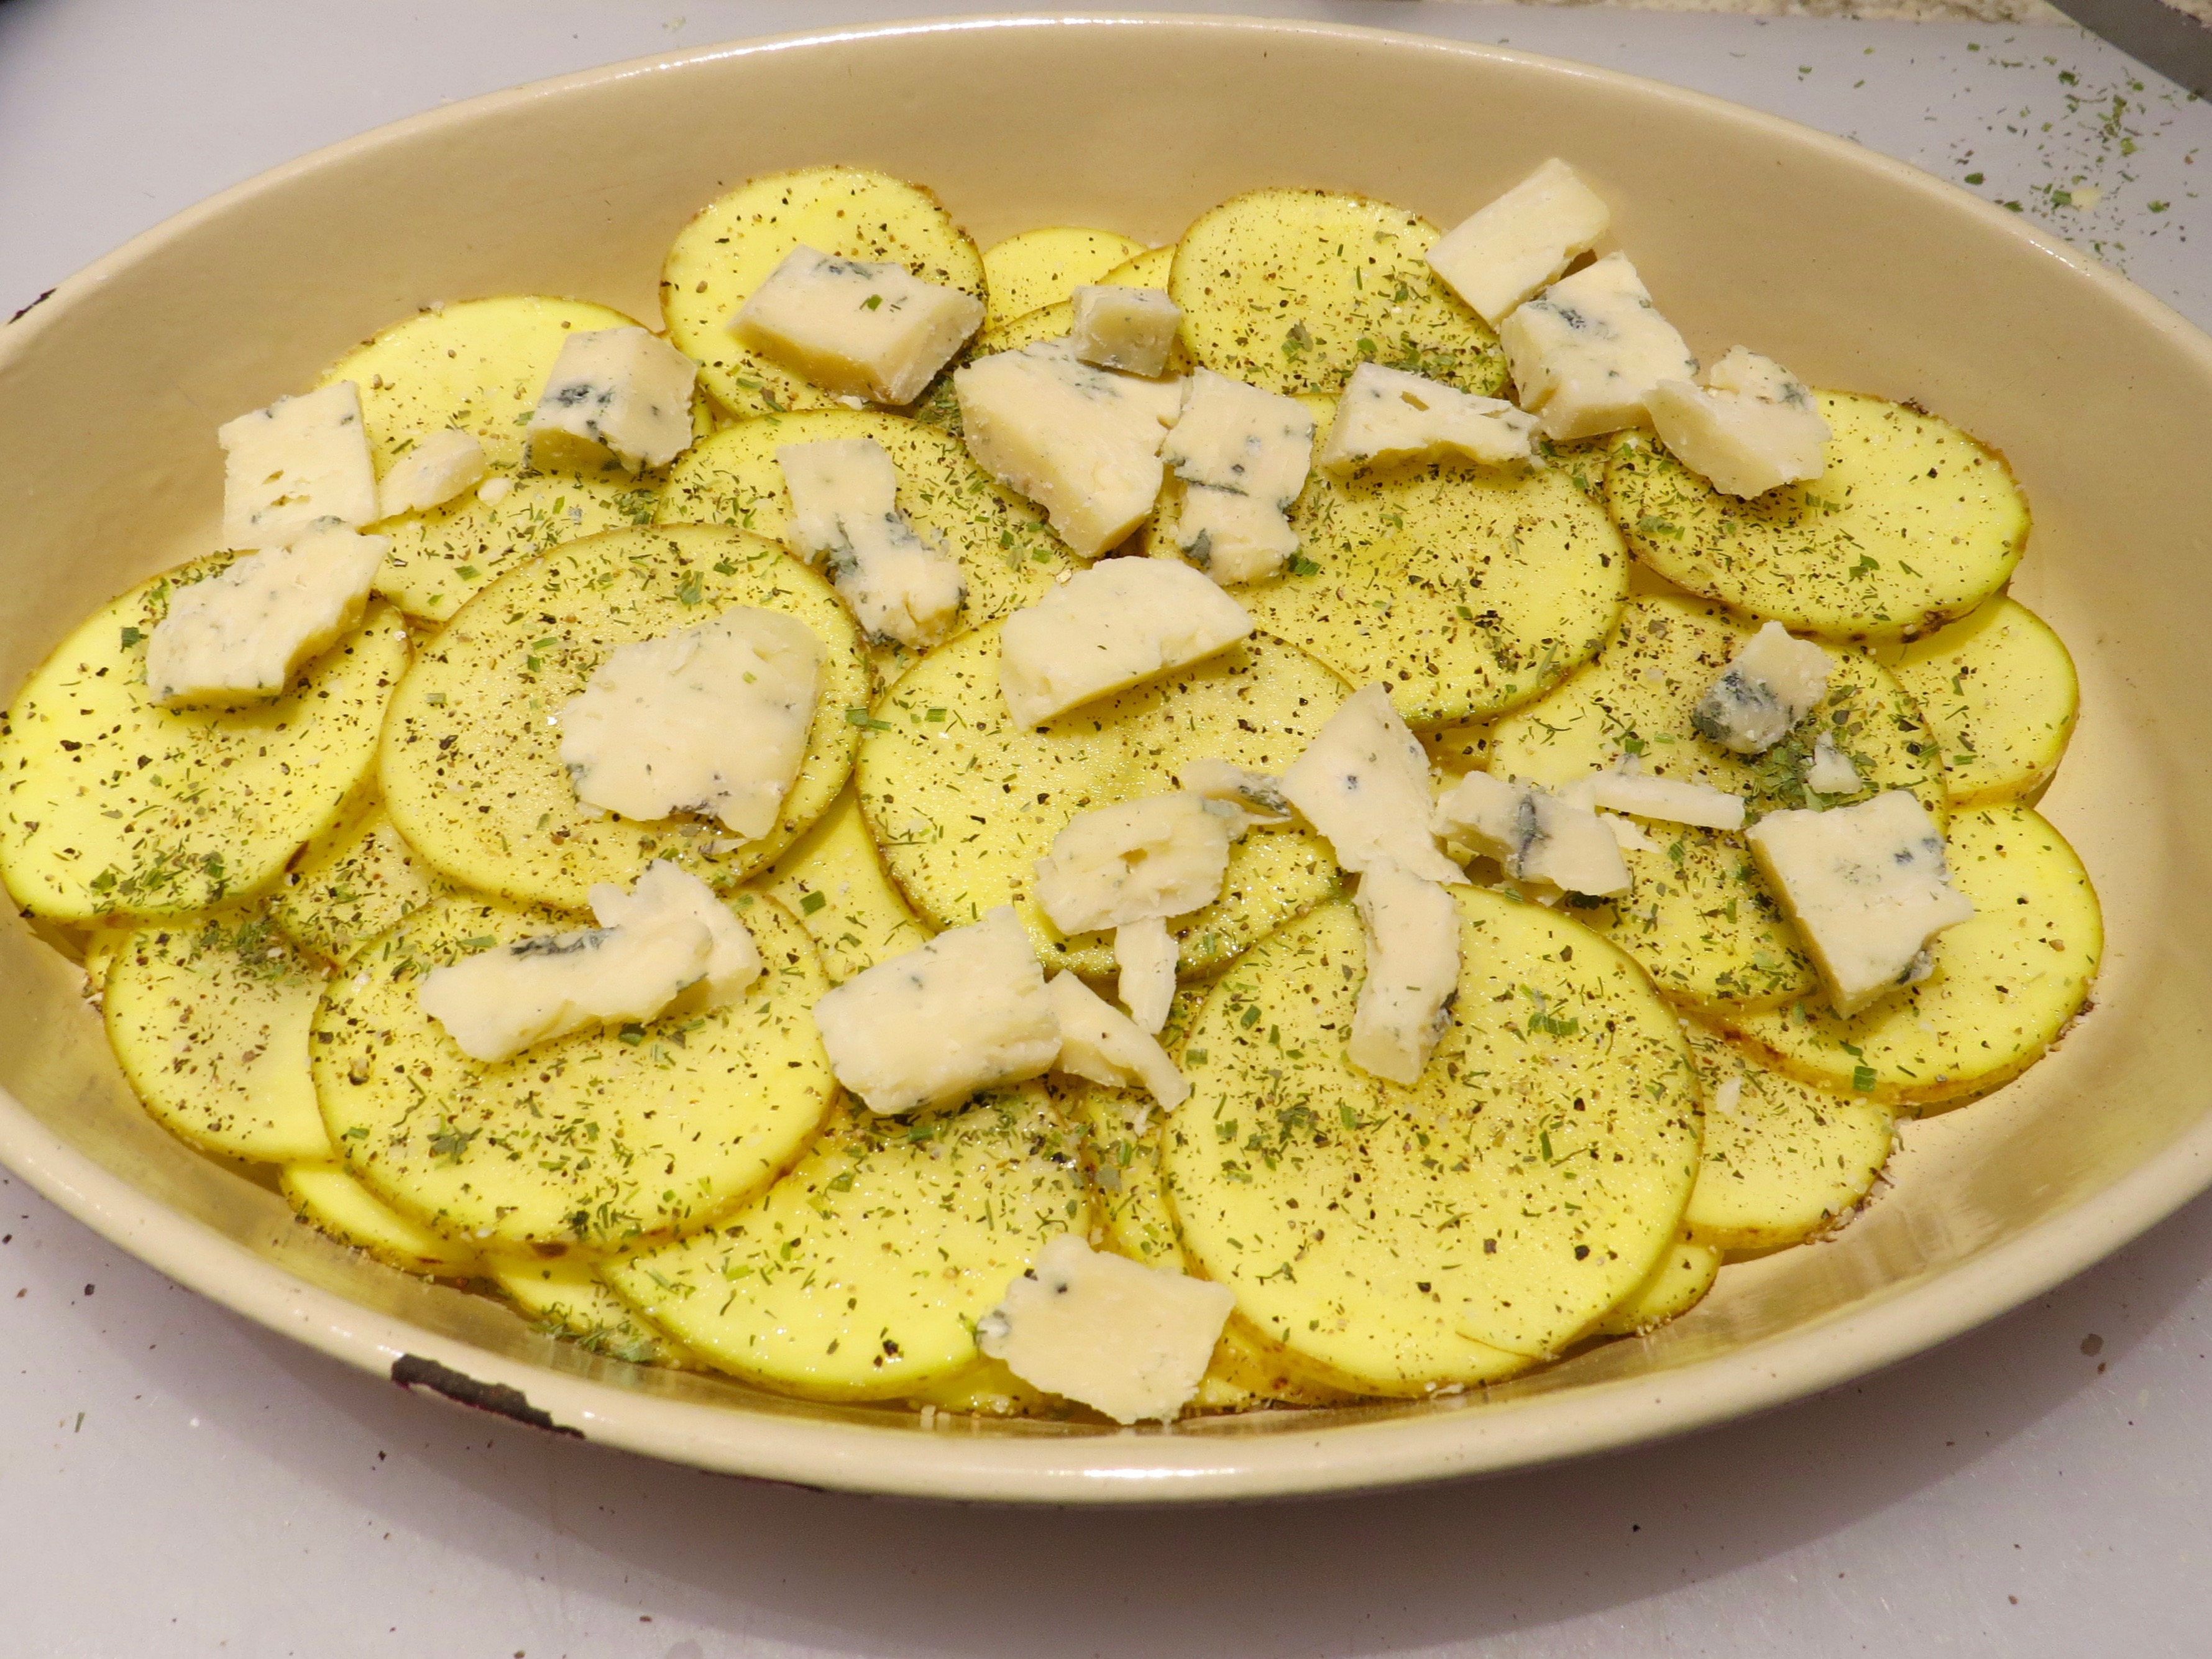 Layer #1 - sliced potatoes, bleu cheese and seasoning.